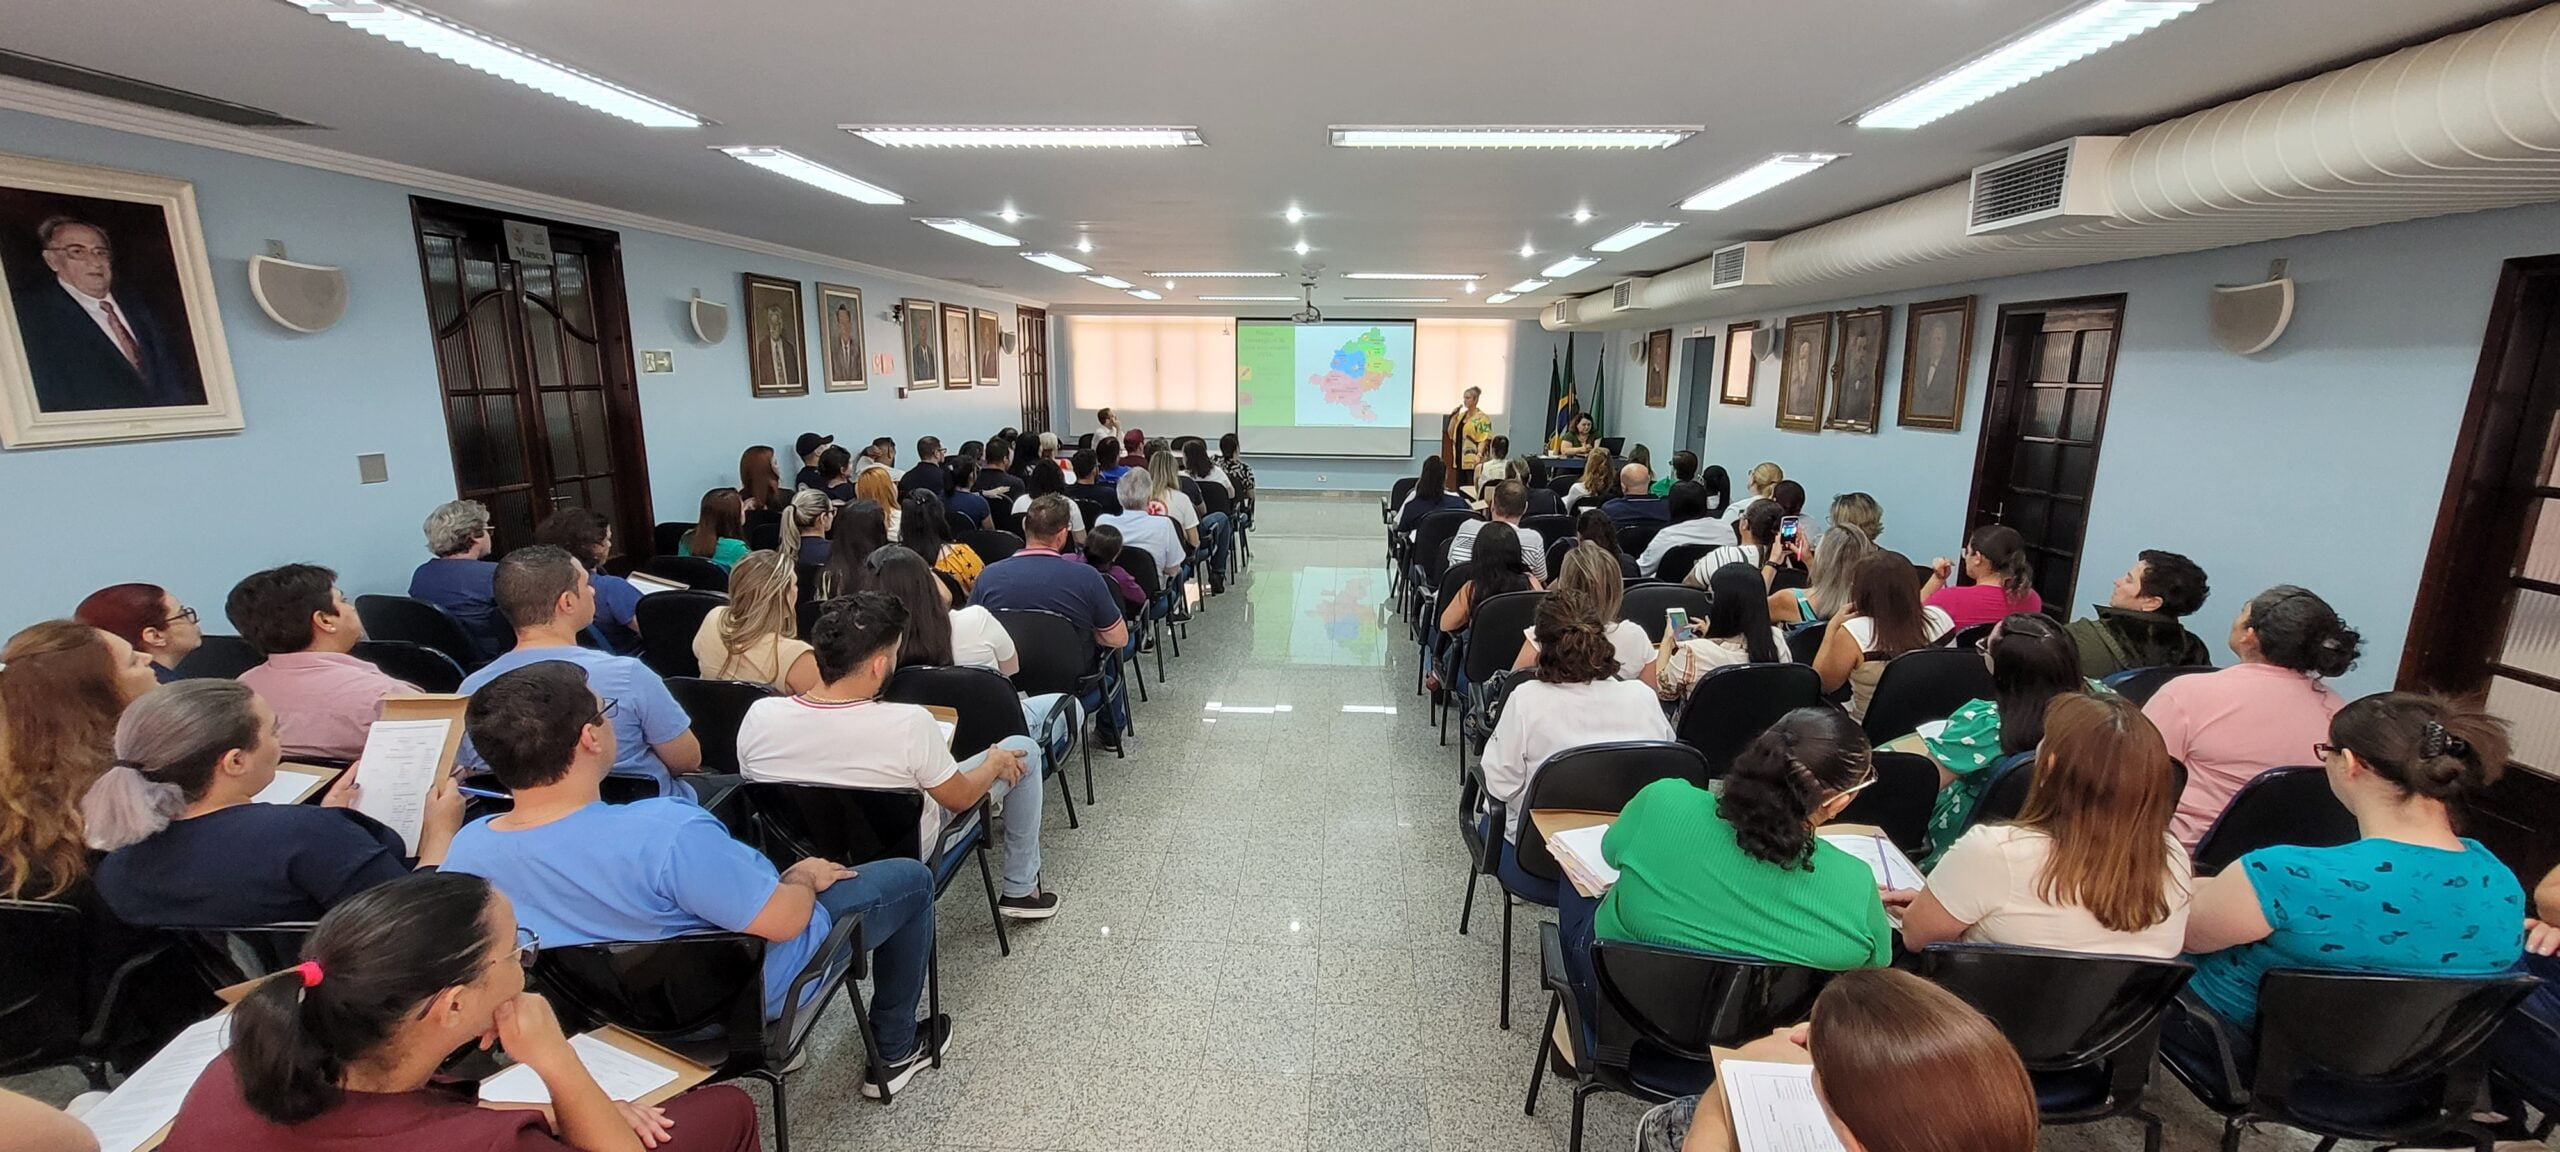 Cerca de 100 pessoas de 26 cidades participaram da capacitação realizada hoje em Piracicaba